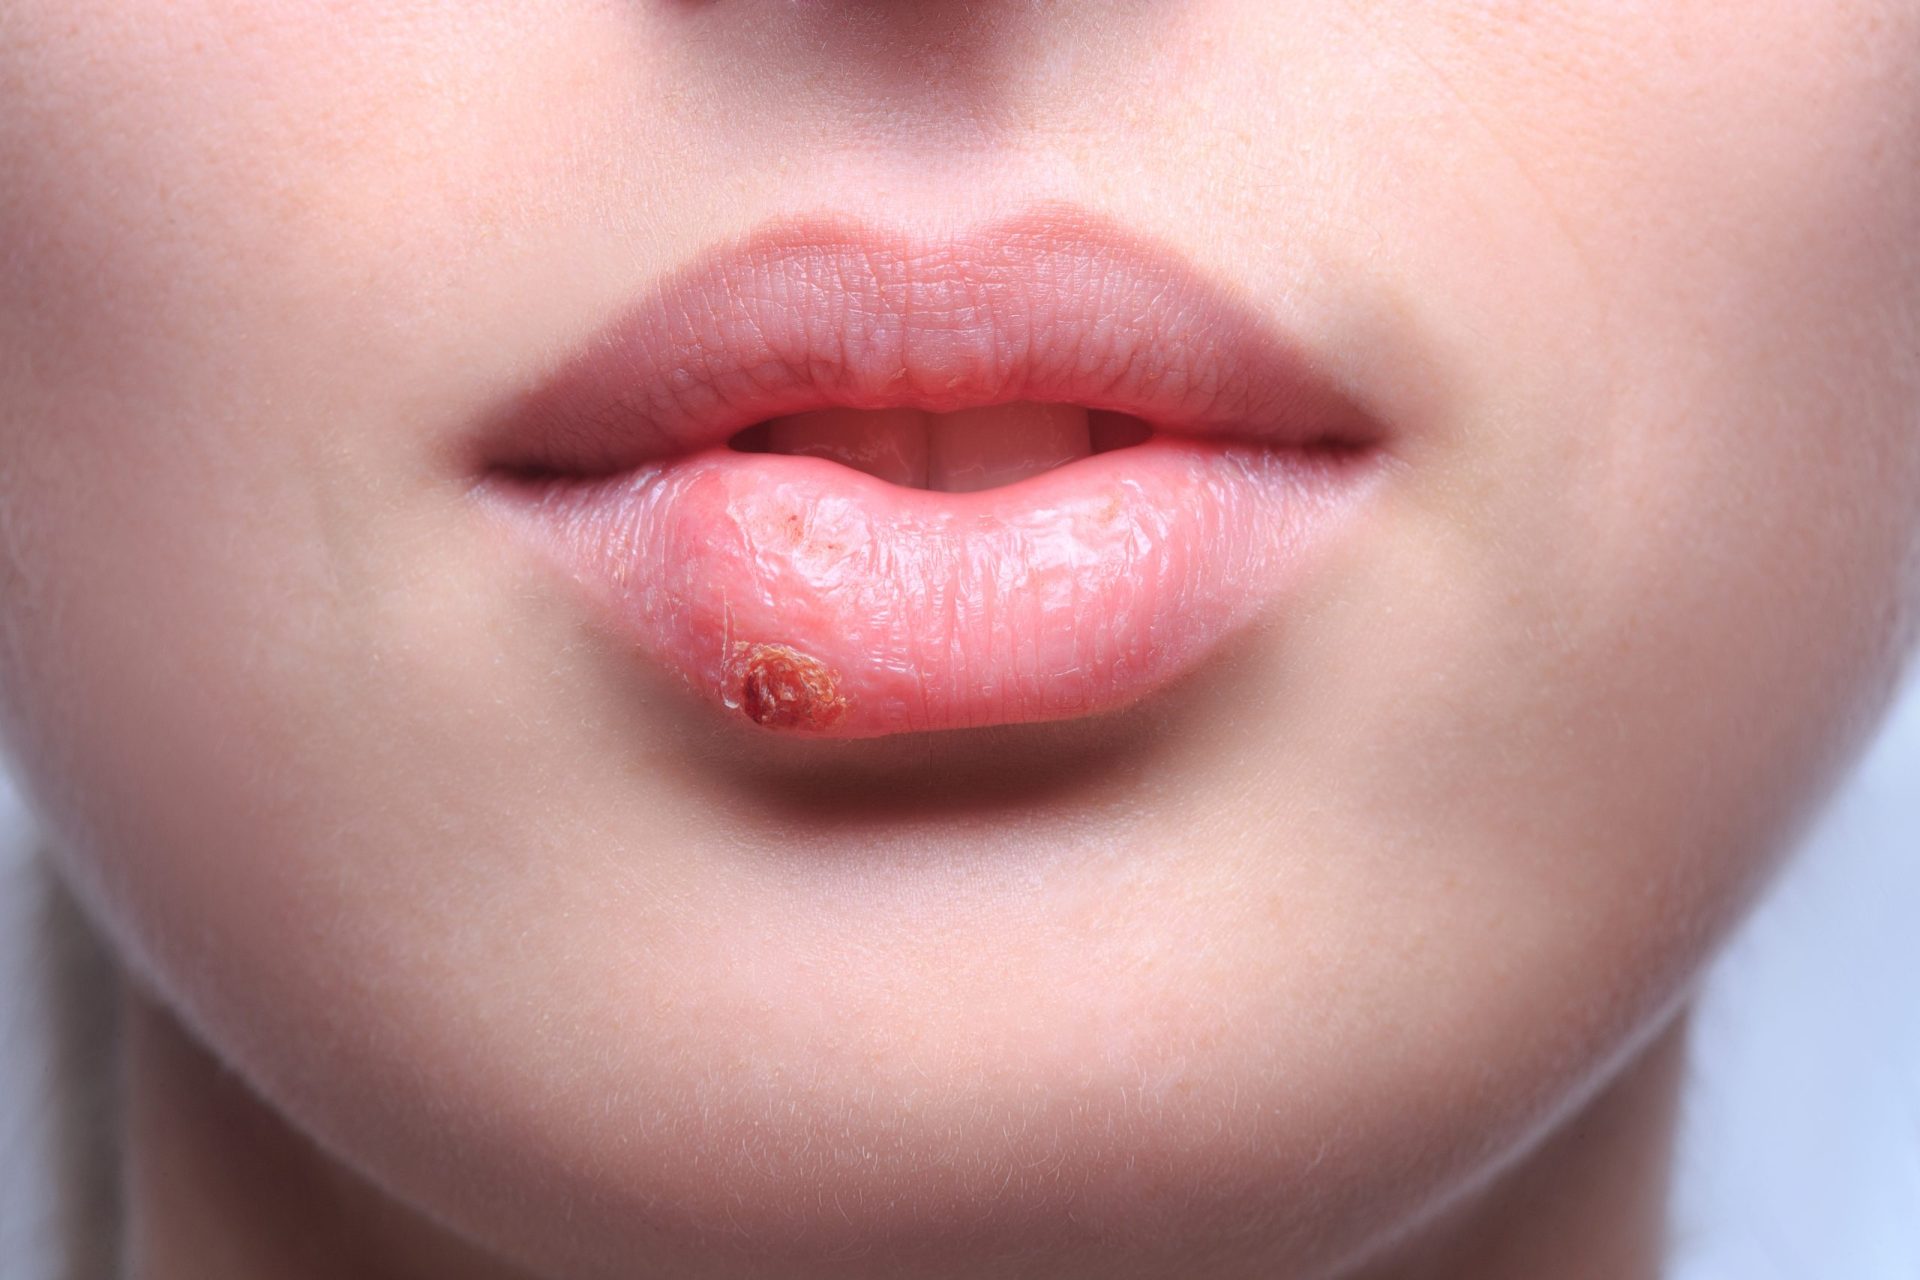 Sabia que tem mais de 50% de hipóteses de ter herpes?